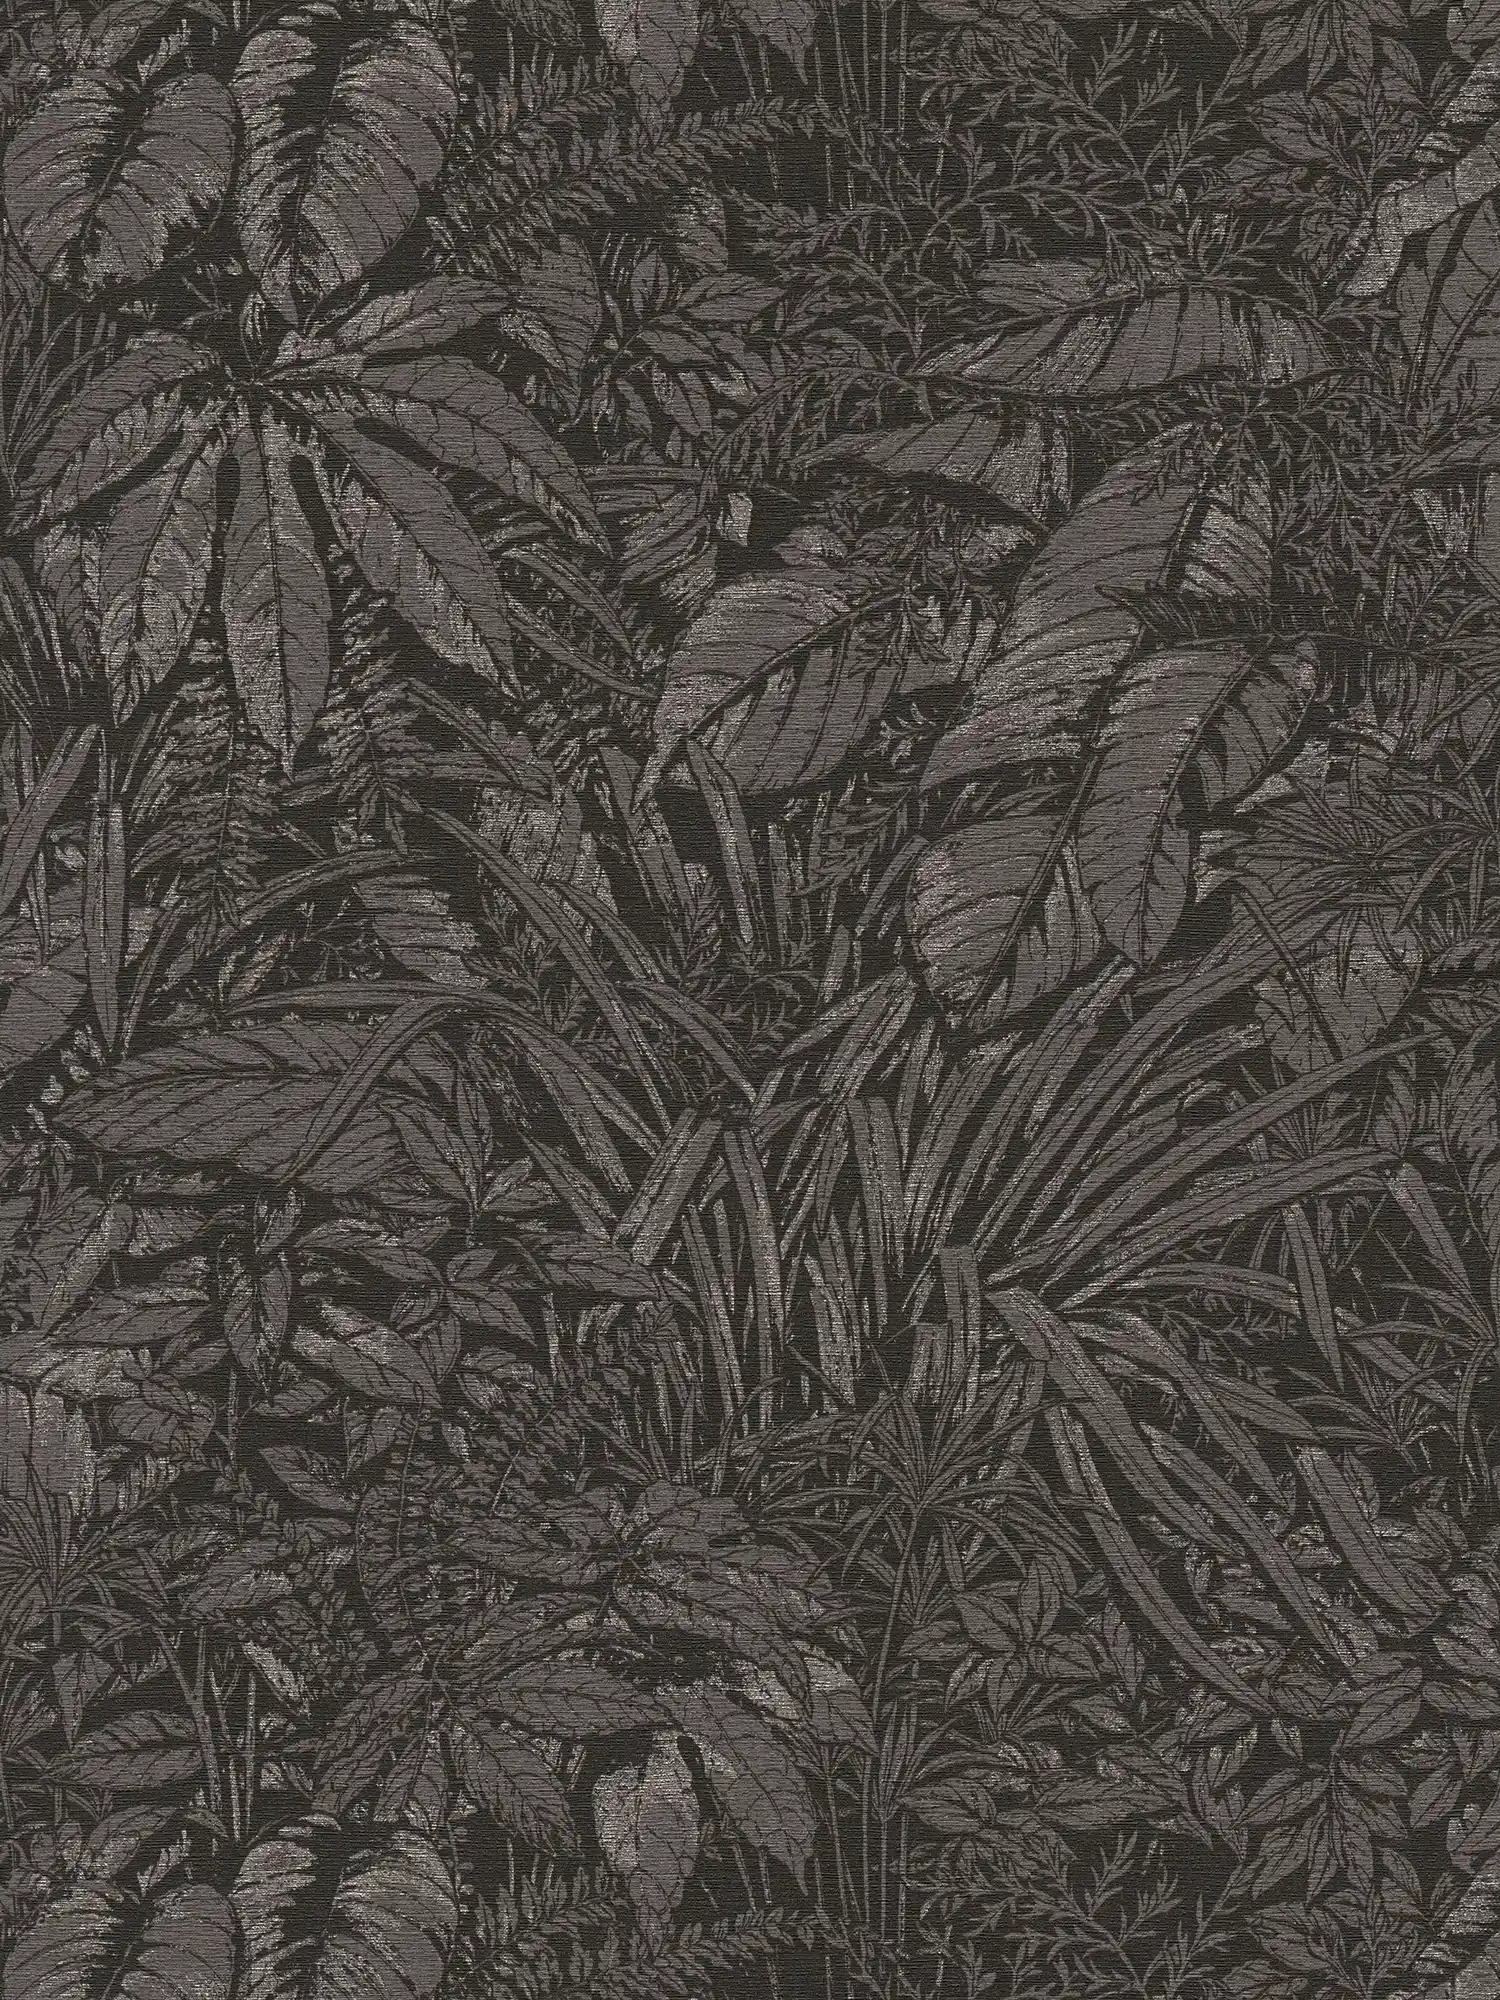 Papel pintado tejido-no tejido floral con motivos selváticos - negro, gris, plata
